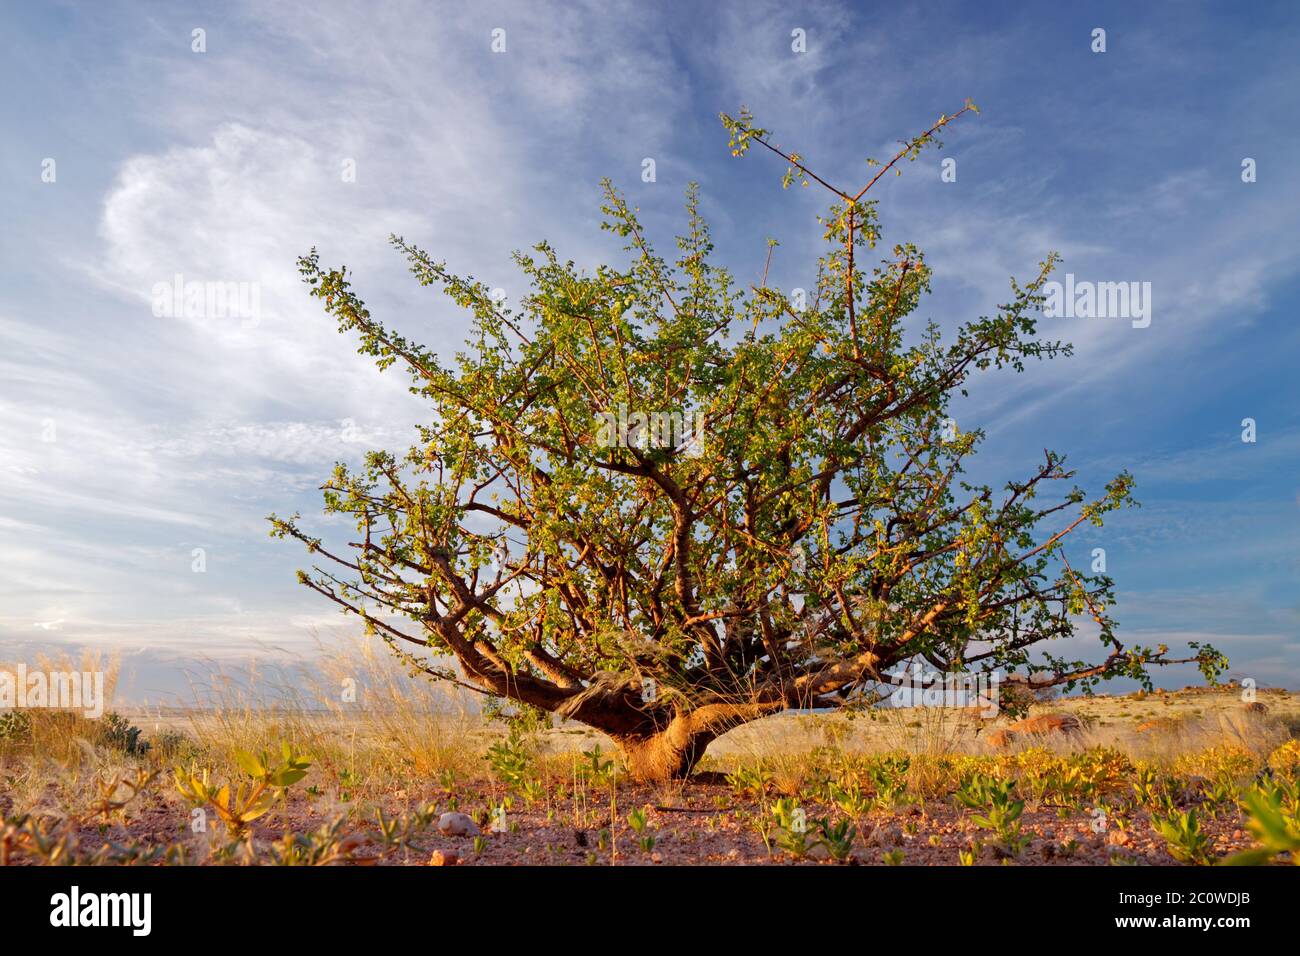 Désert bleu afrique désert paysage nature paysage arbustive campagne nuages Banque D'Images